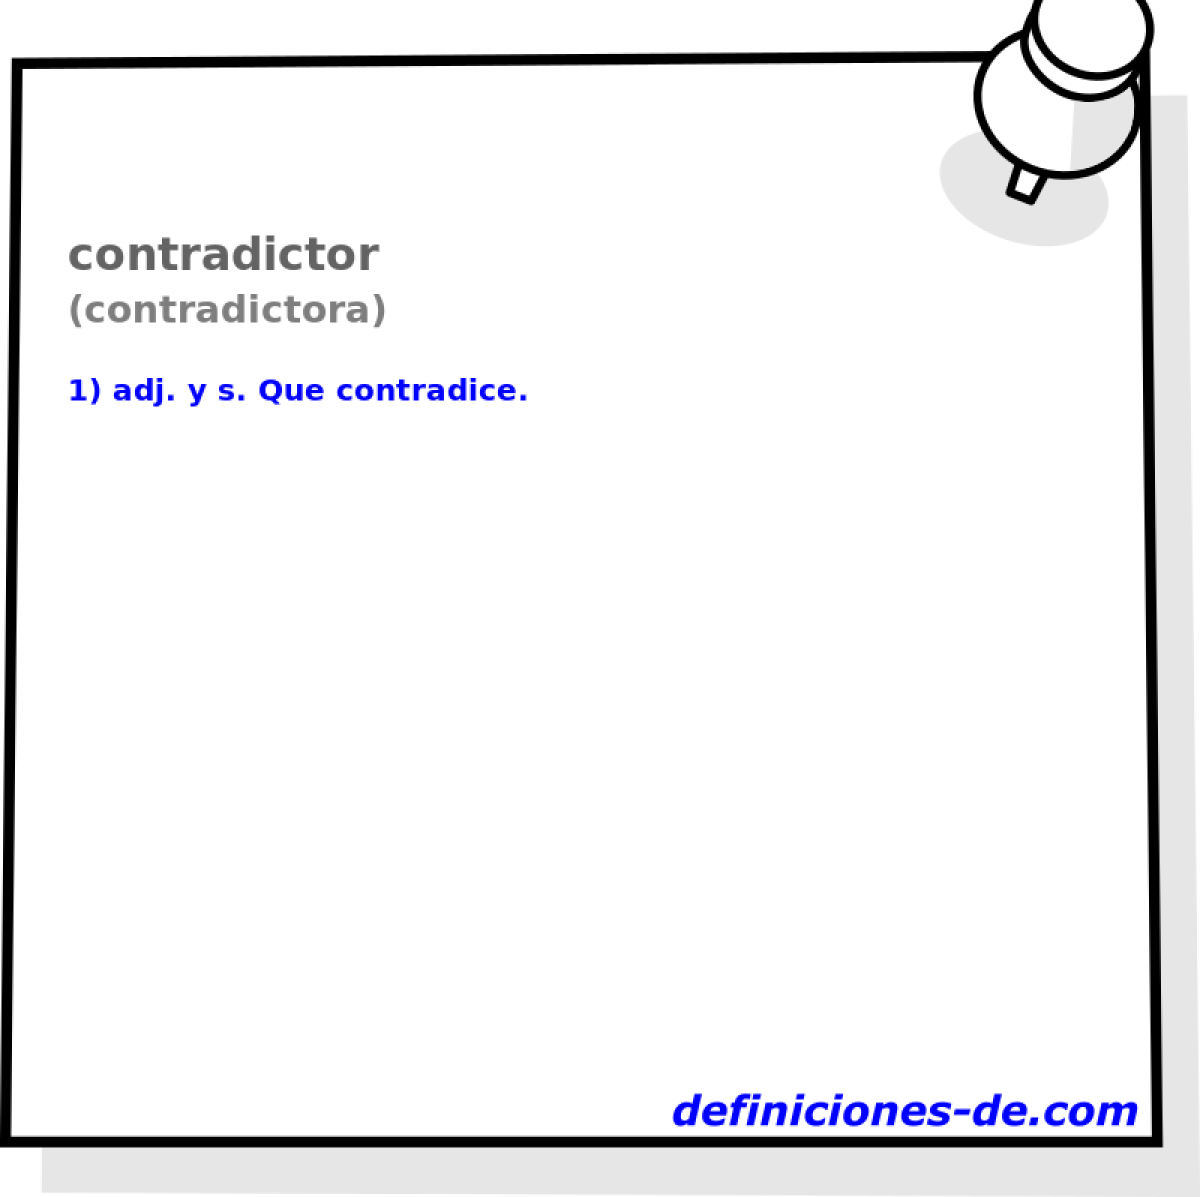 contradictor (contradictora)